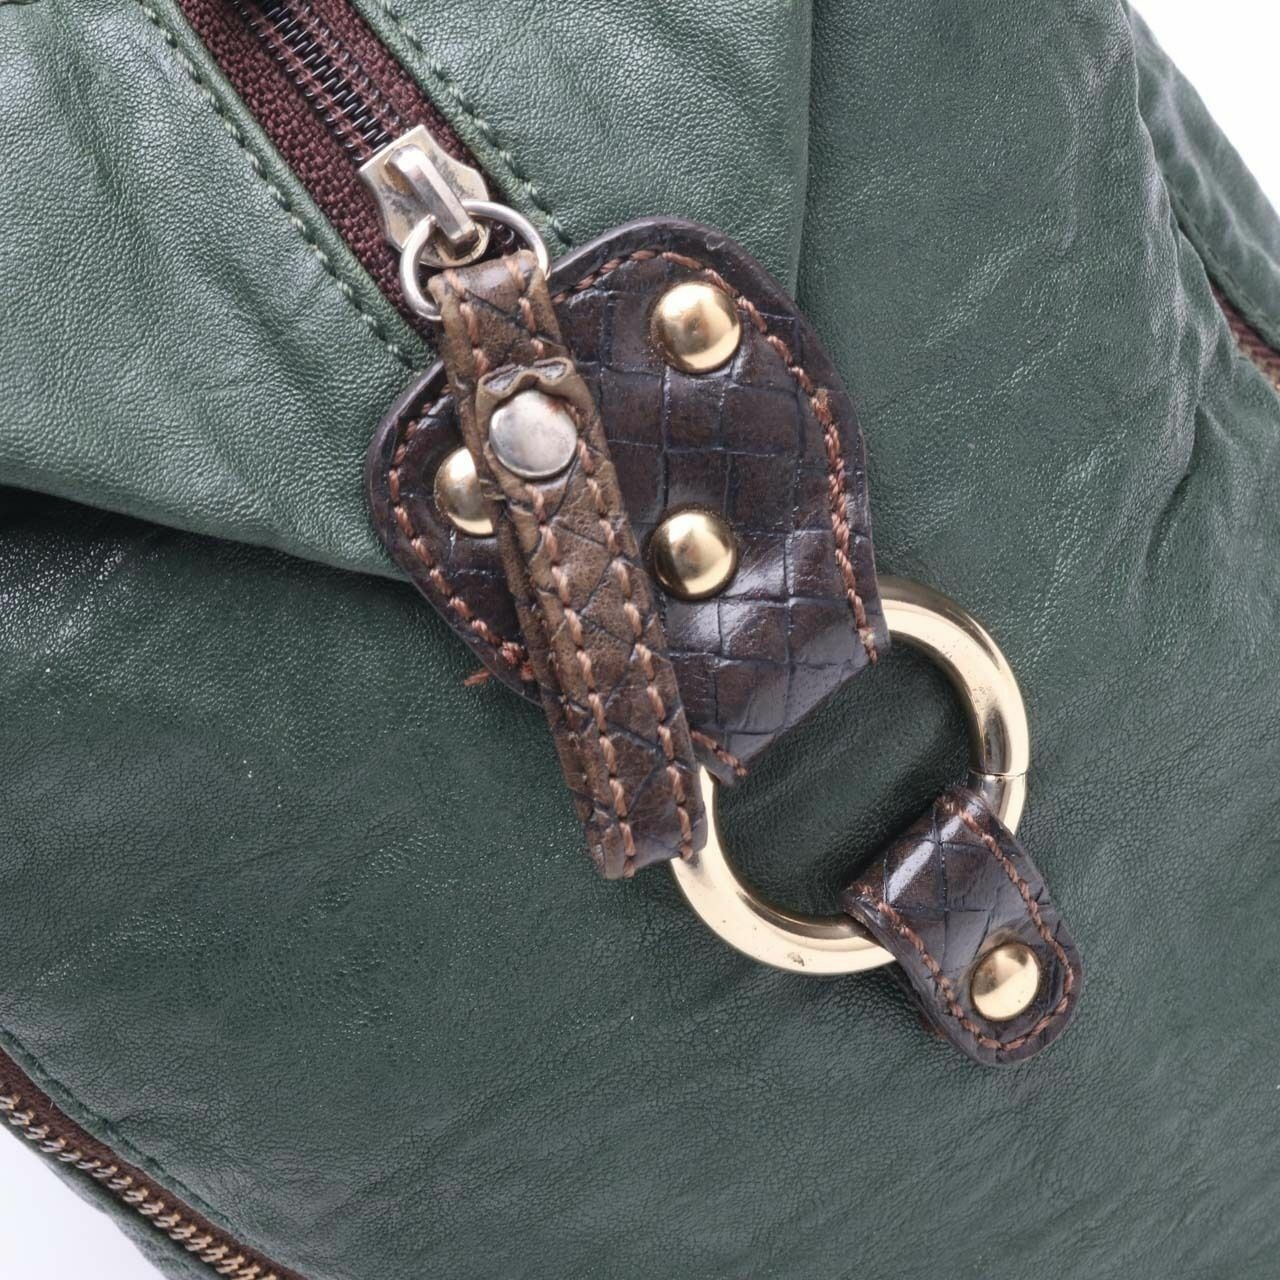 Anne Klein Green Handbag